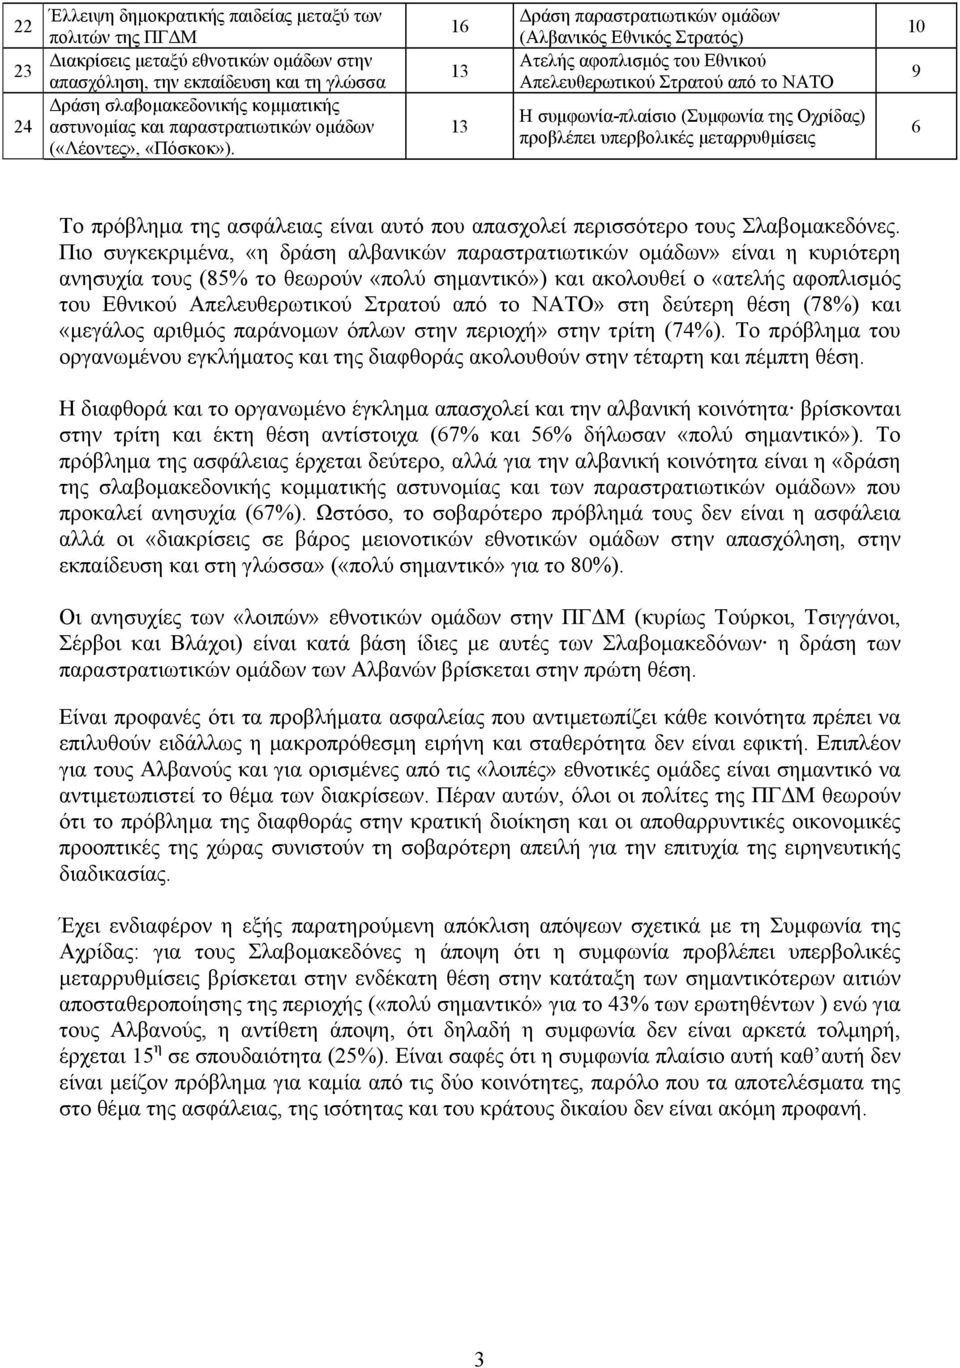 1 13 13 ράση παραστρατιωτικών οµάδων (Αλβανικός Εθνικός Στρατός) Ατελής αφοπλισµός του Εθνικού Απελευθερωτικού Στρατού από το ΝΑΤΟ Η συµφωνία-πλαίσιο (Συµφωνία της Οχρίδας) προβλέπει υπερβολικές